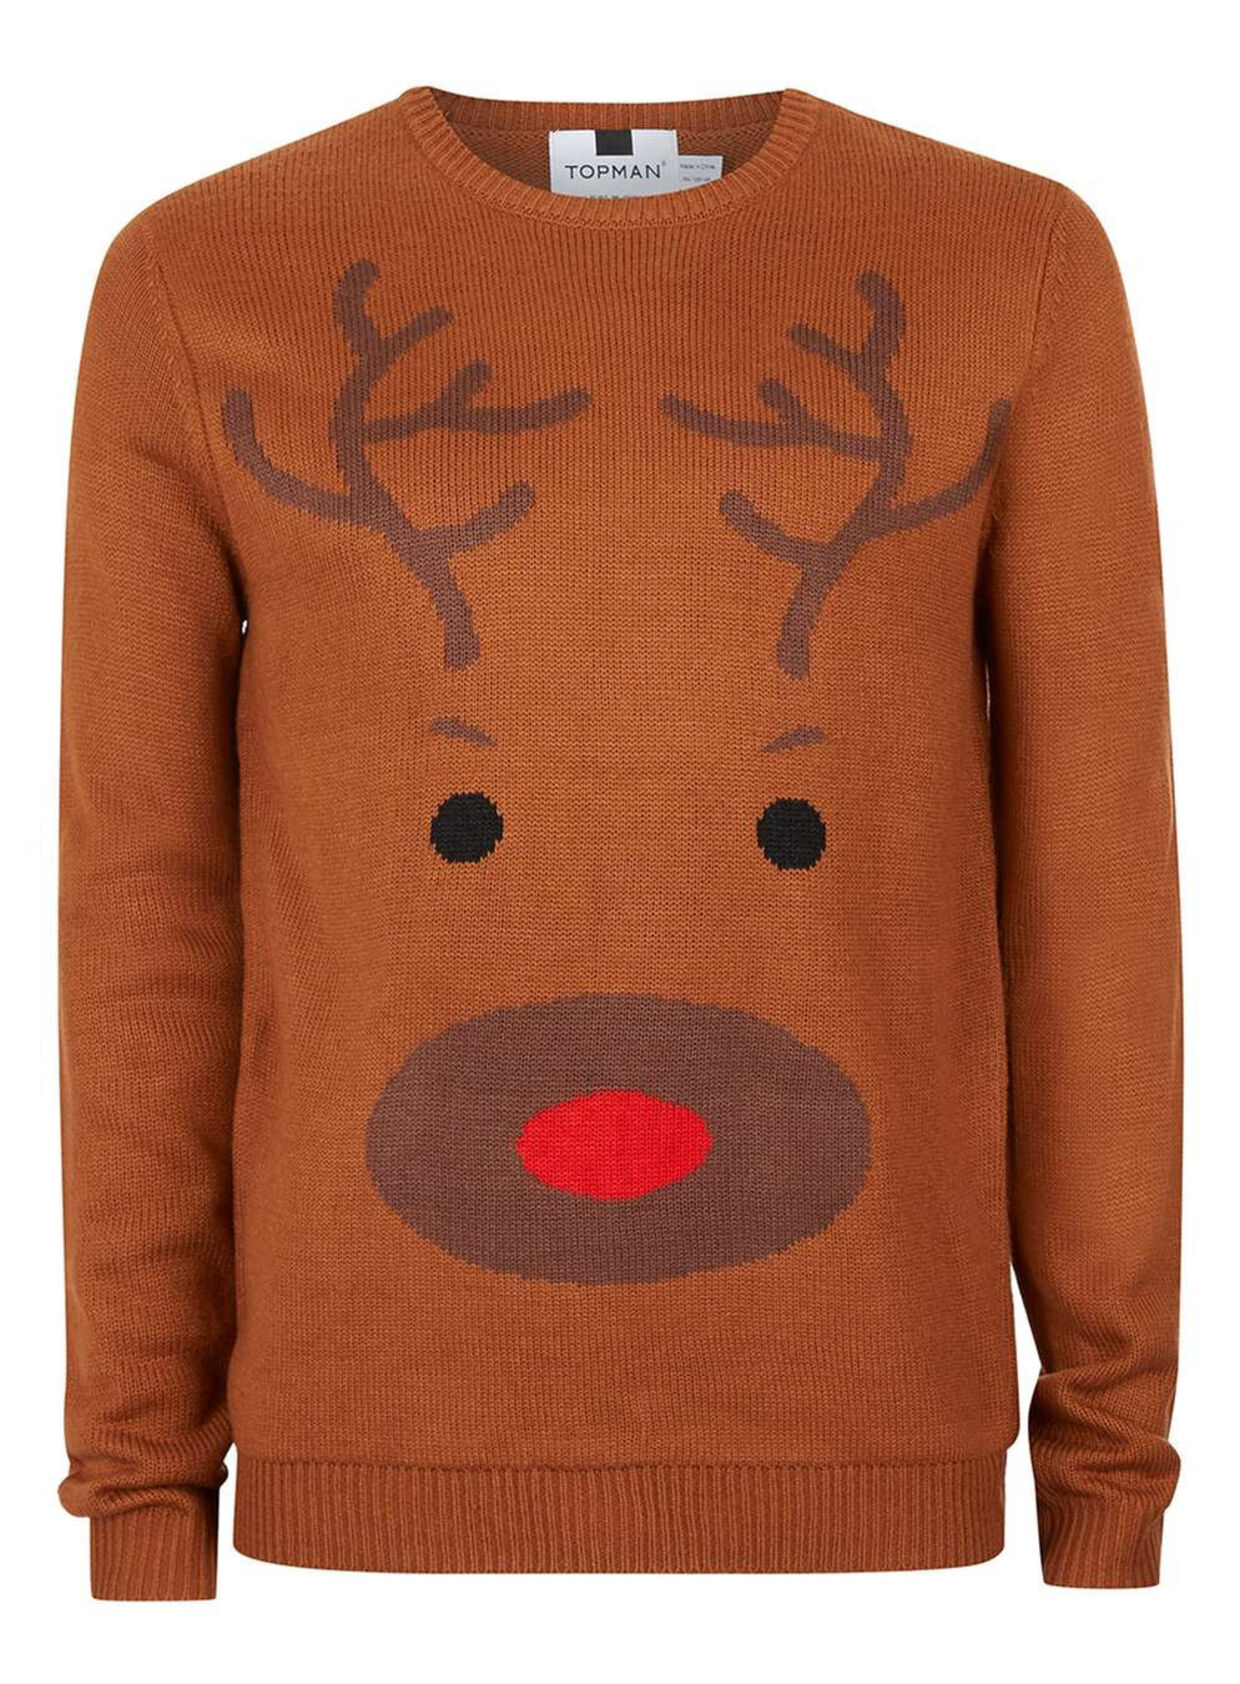 Skulle du have lyst til at gøre Liam kunsten efter, koster en rensdyrsweater fra topman.com ca. 265 kroner.